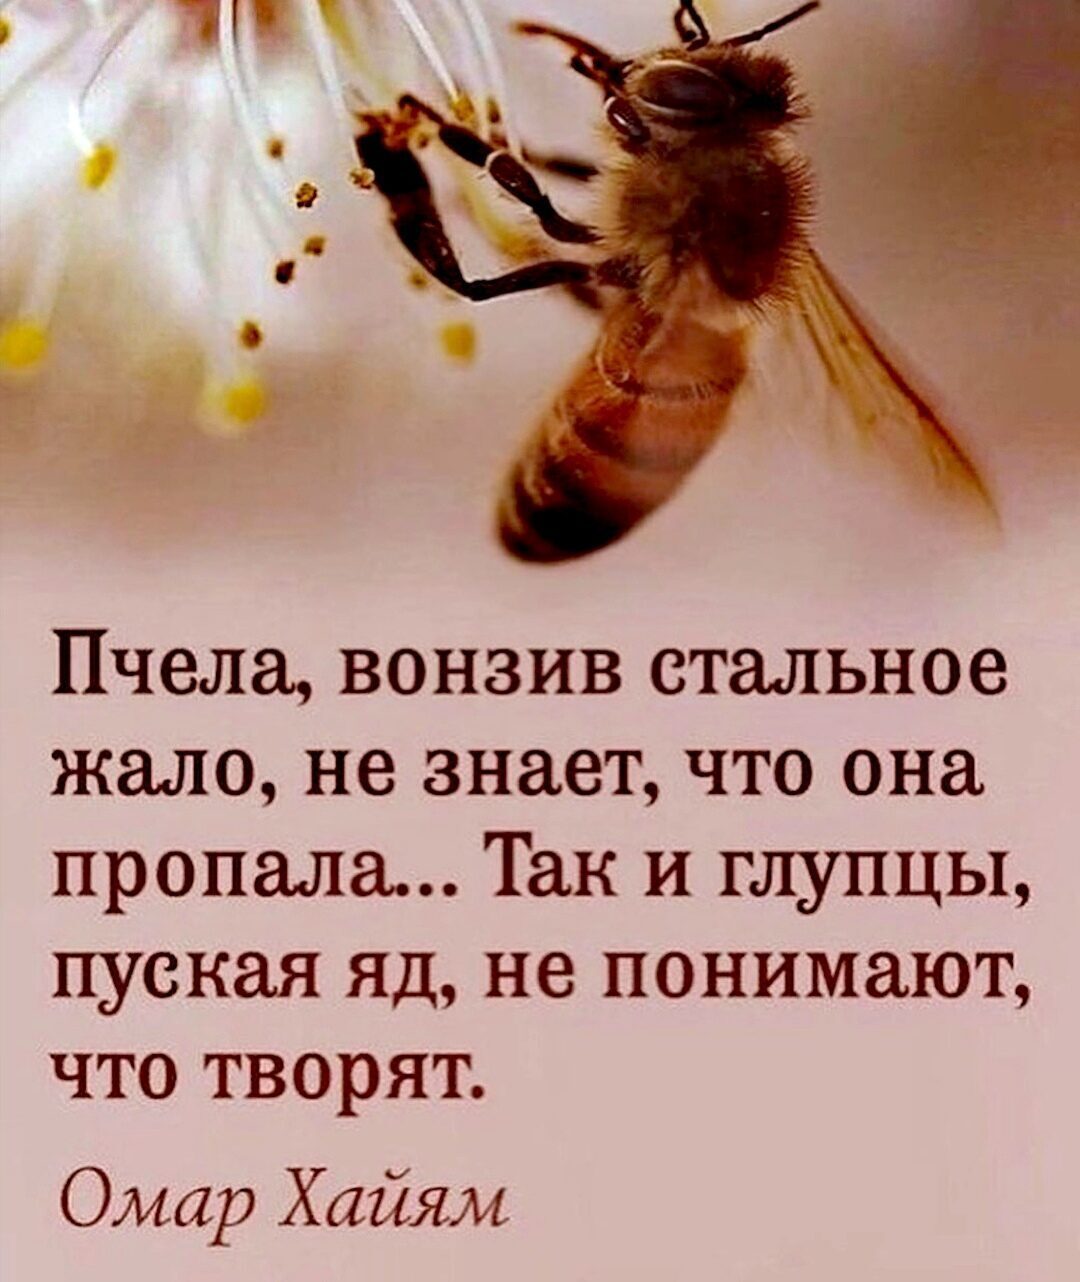 Пчела вонзив стальное жало